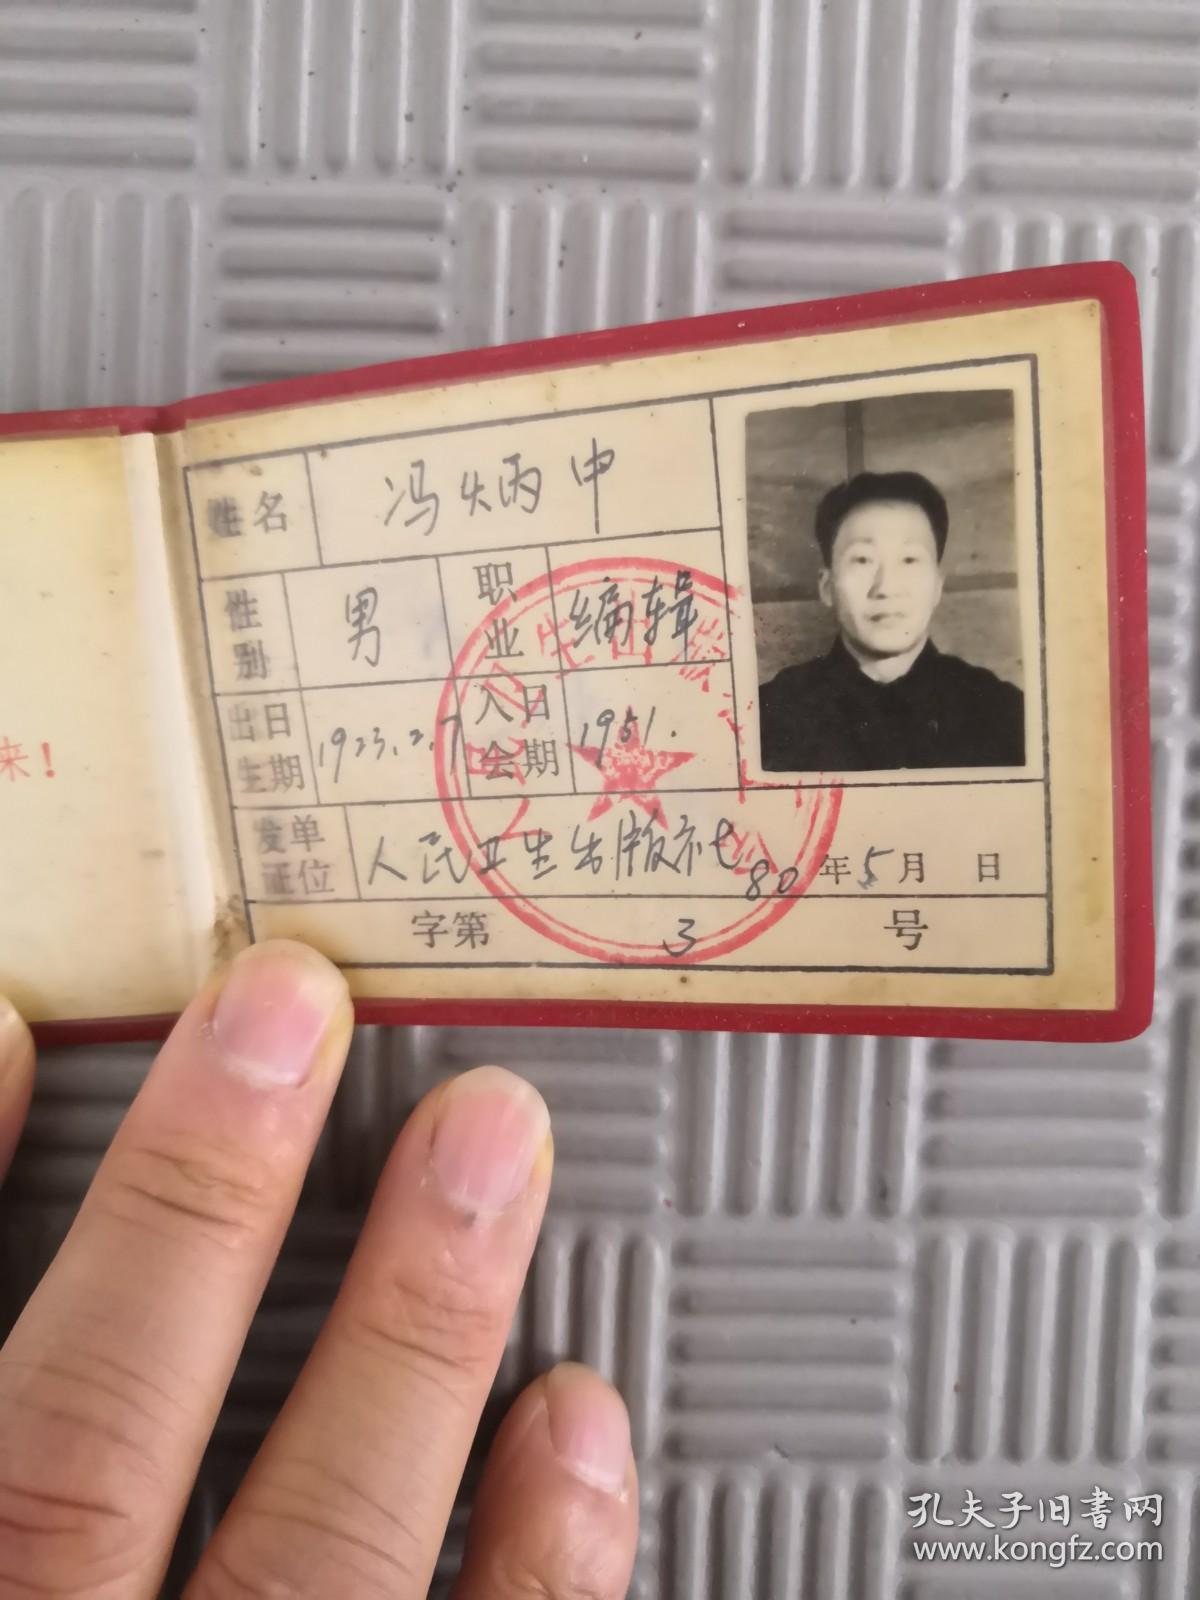 冯炳中 中华人民共和国工会会员证